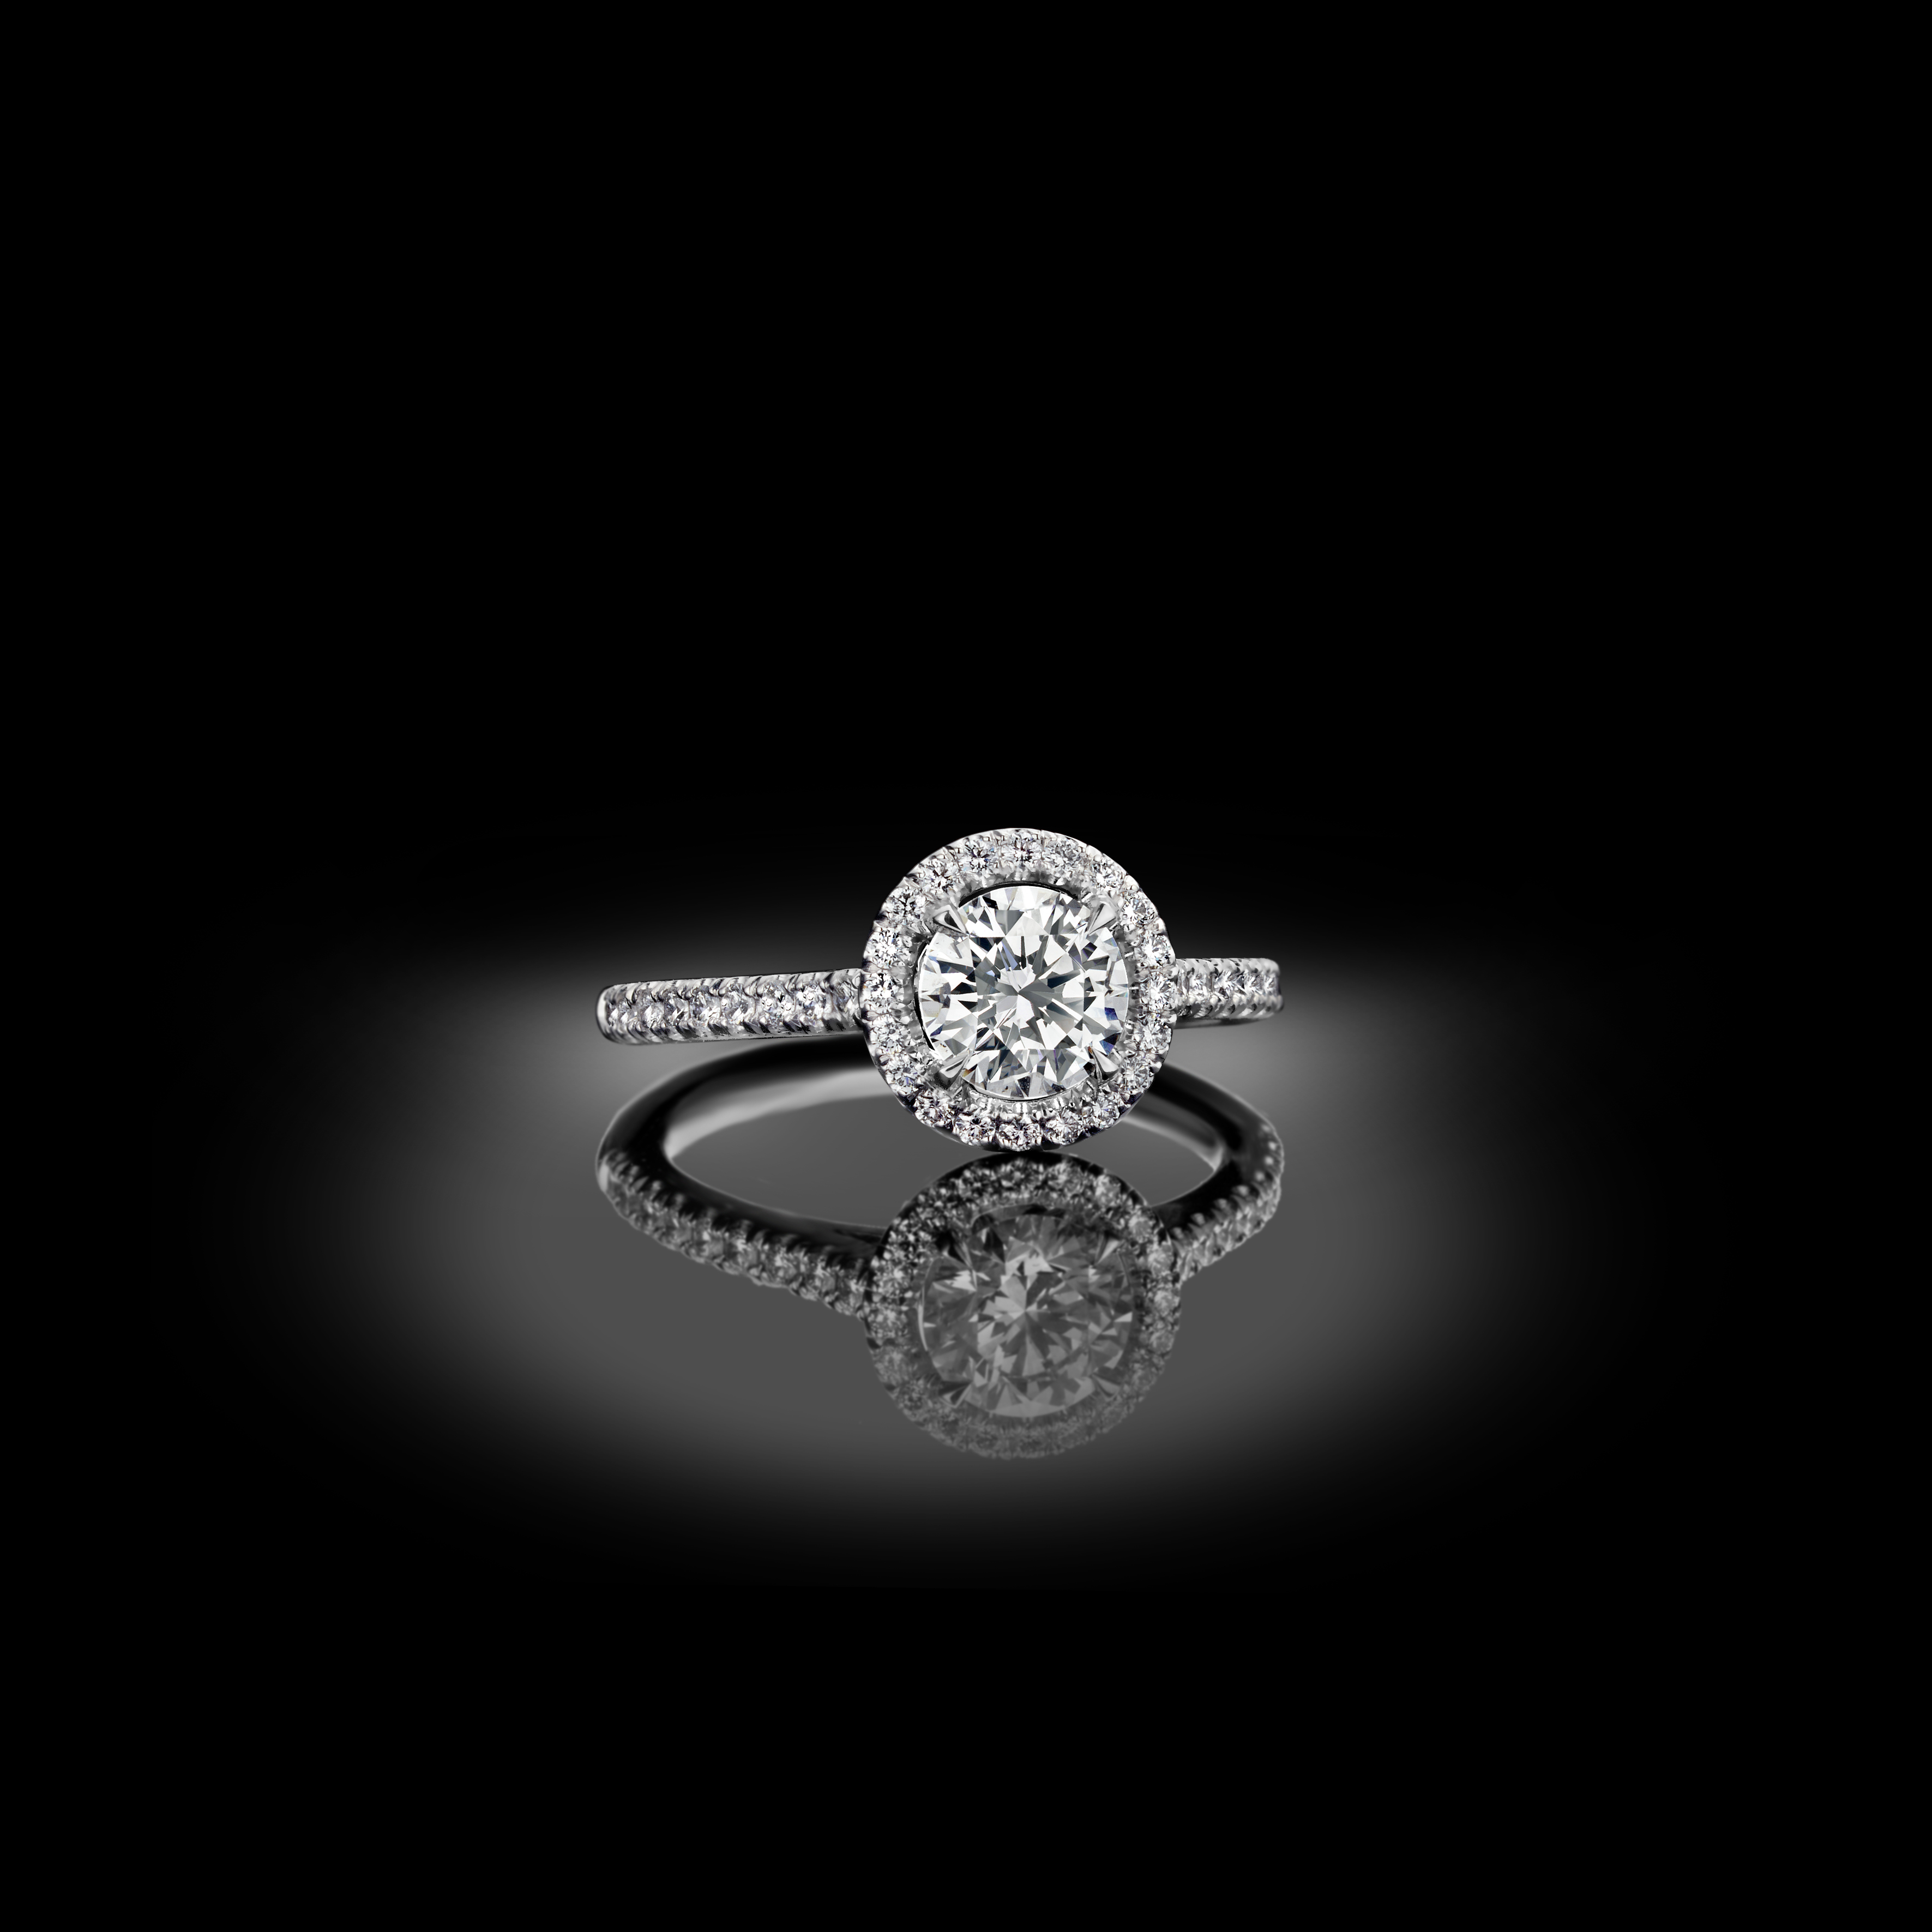 Klassischer und eleganter, zeitloser Verlobungsring mit Diamantentourage.